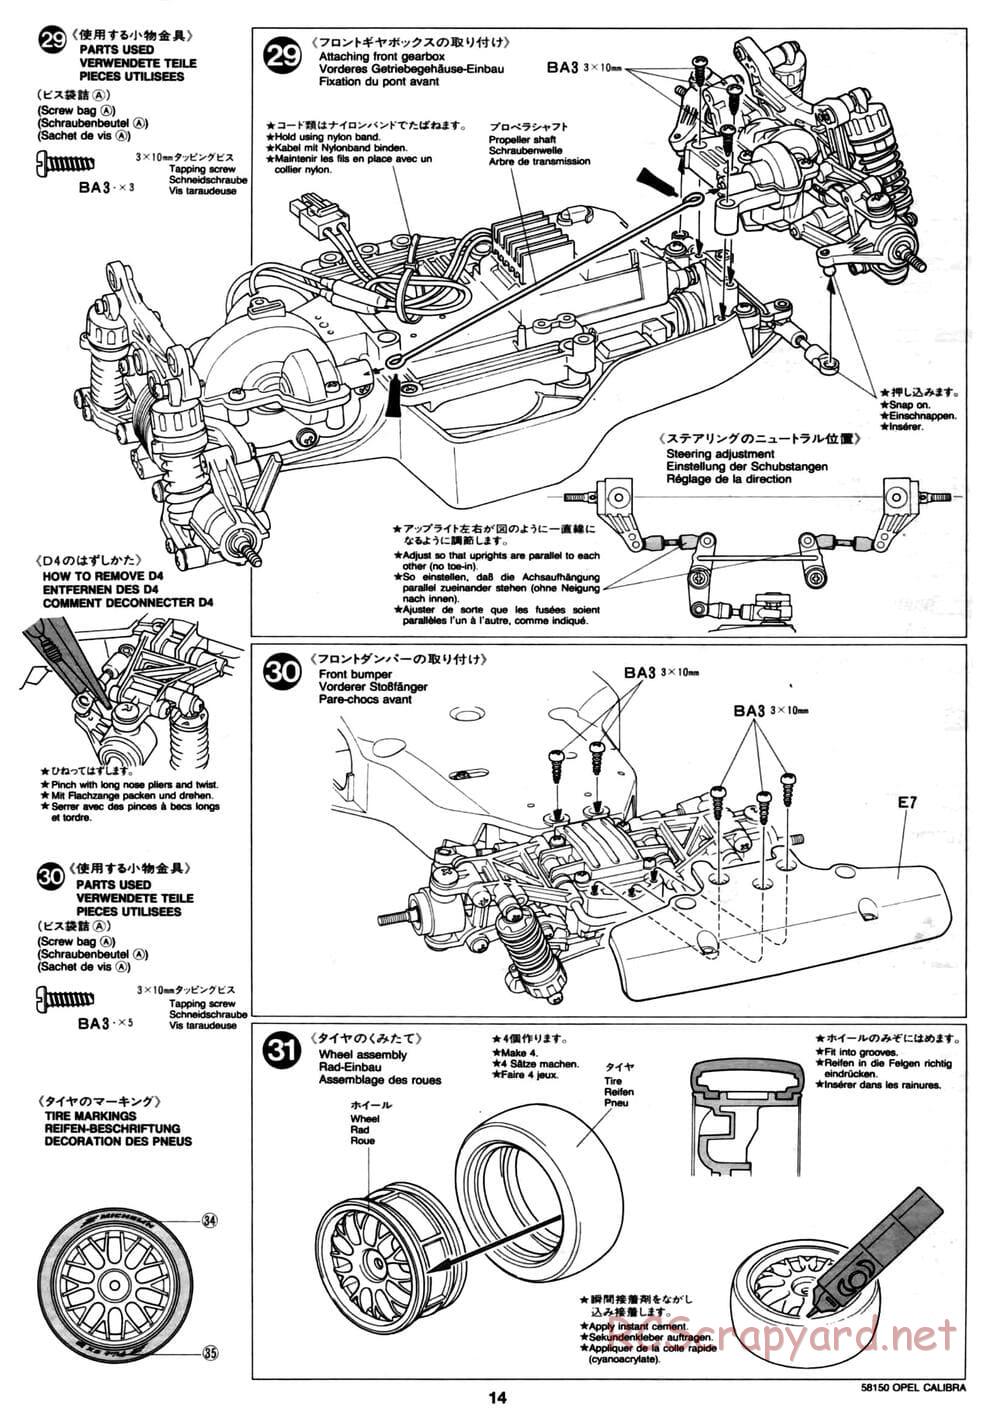 Tamiya - Opel Calibra V6 DTM - TA-02 Chassis - Manual - Page 14